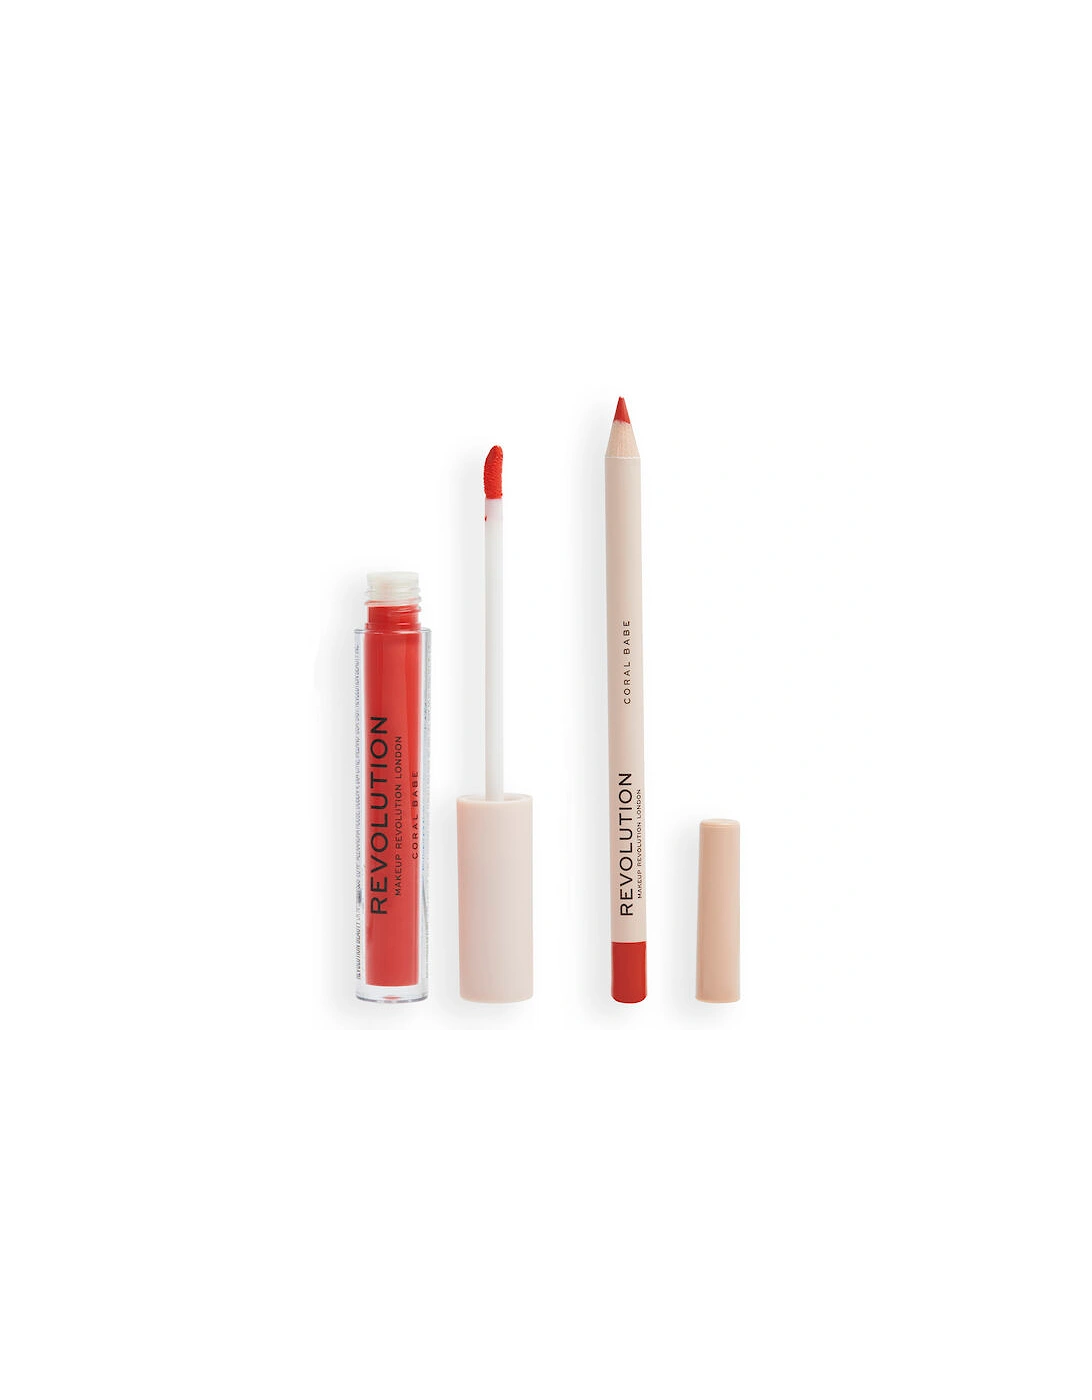 Makeup Lip Contour Kit Sassy Red, 2 of 1